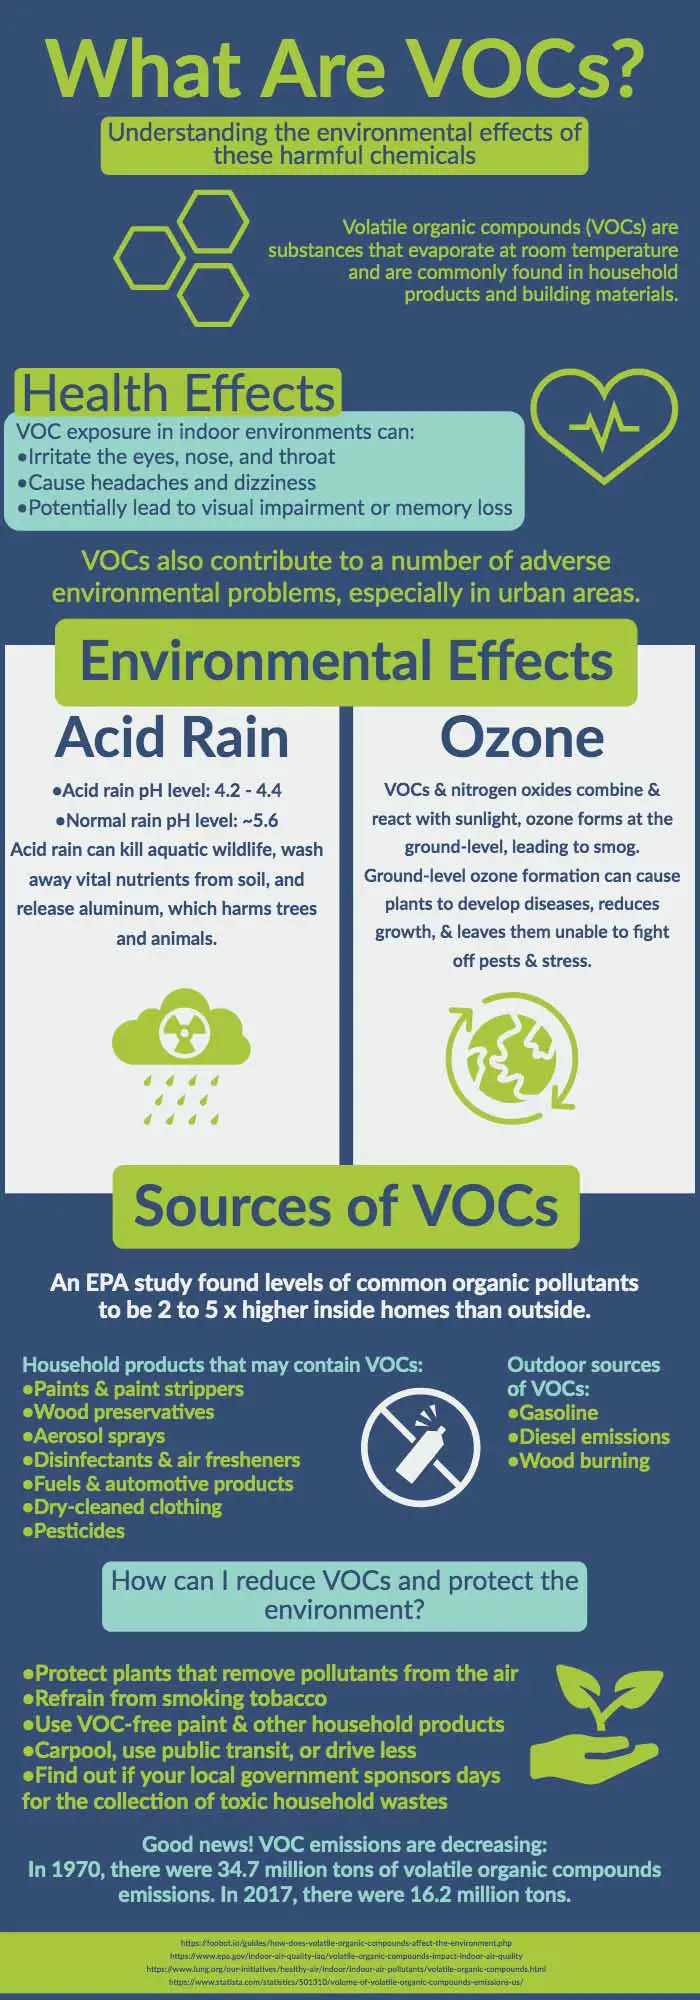 What are VOCs